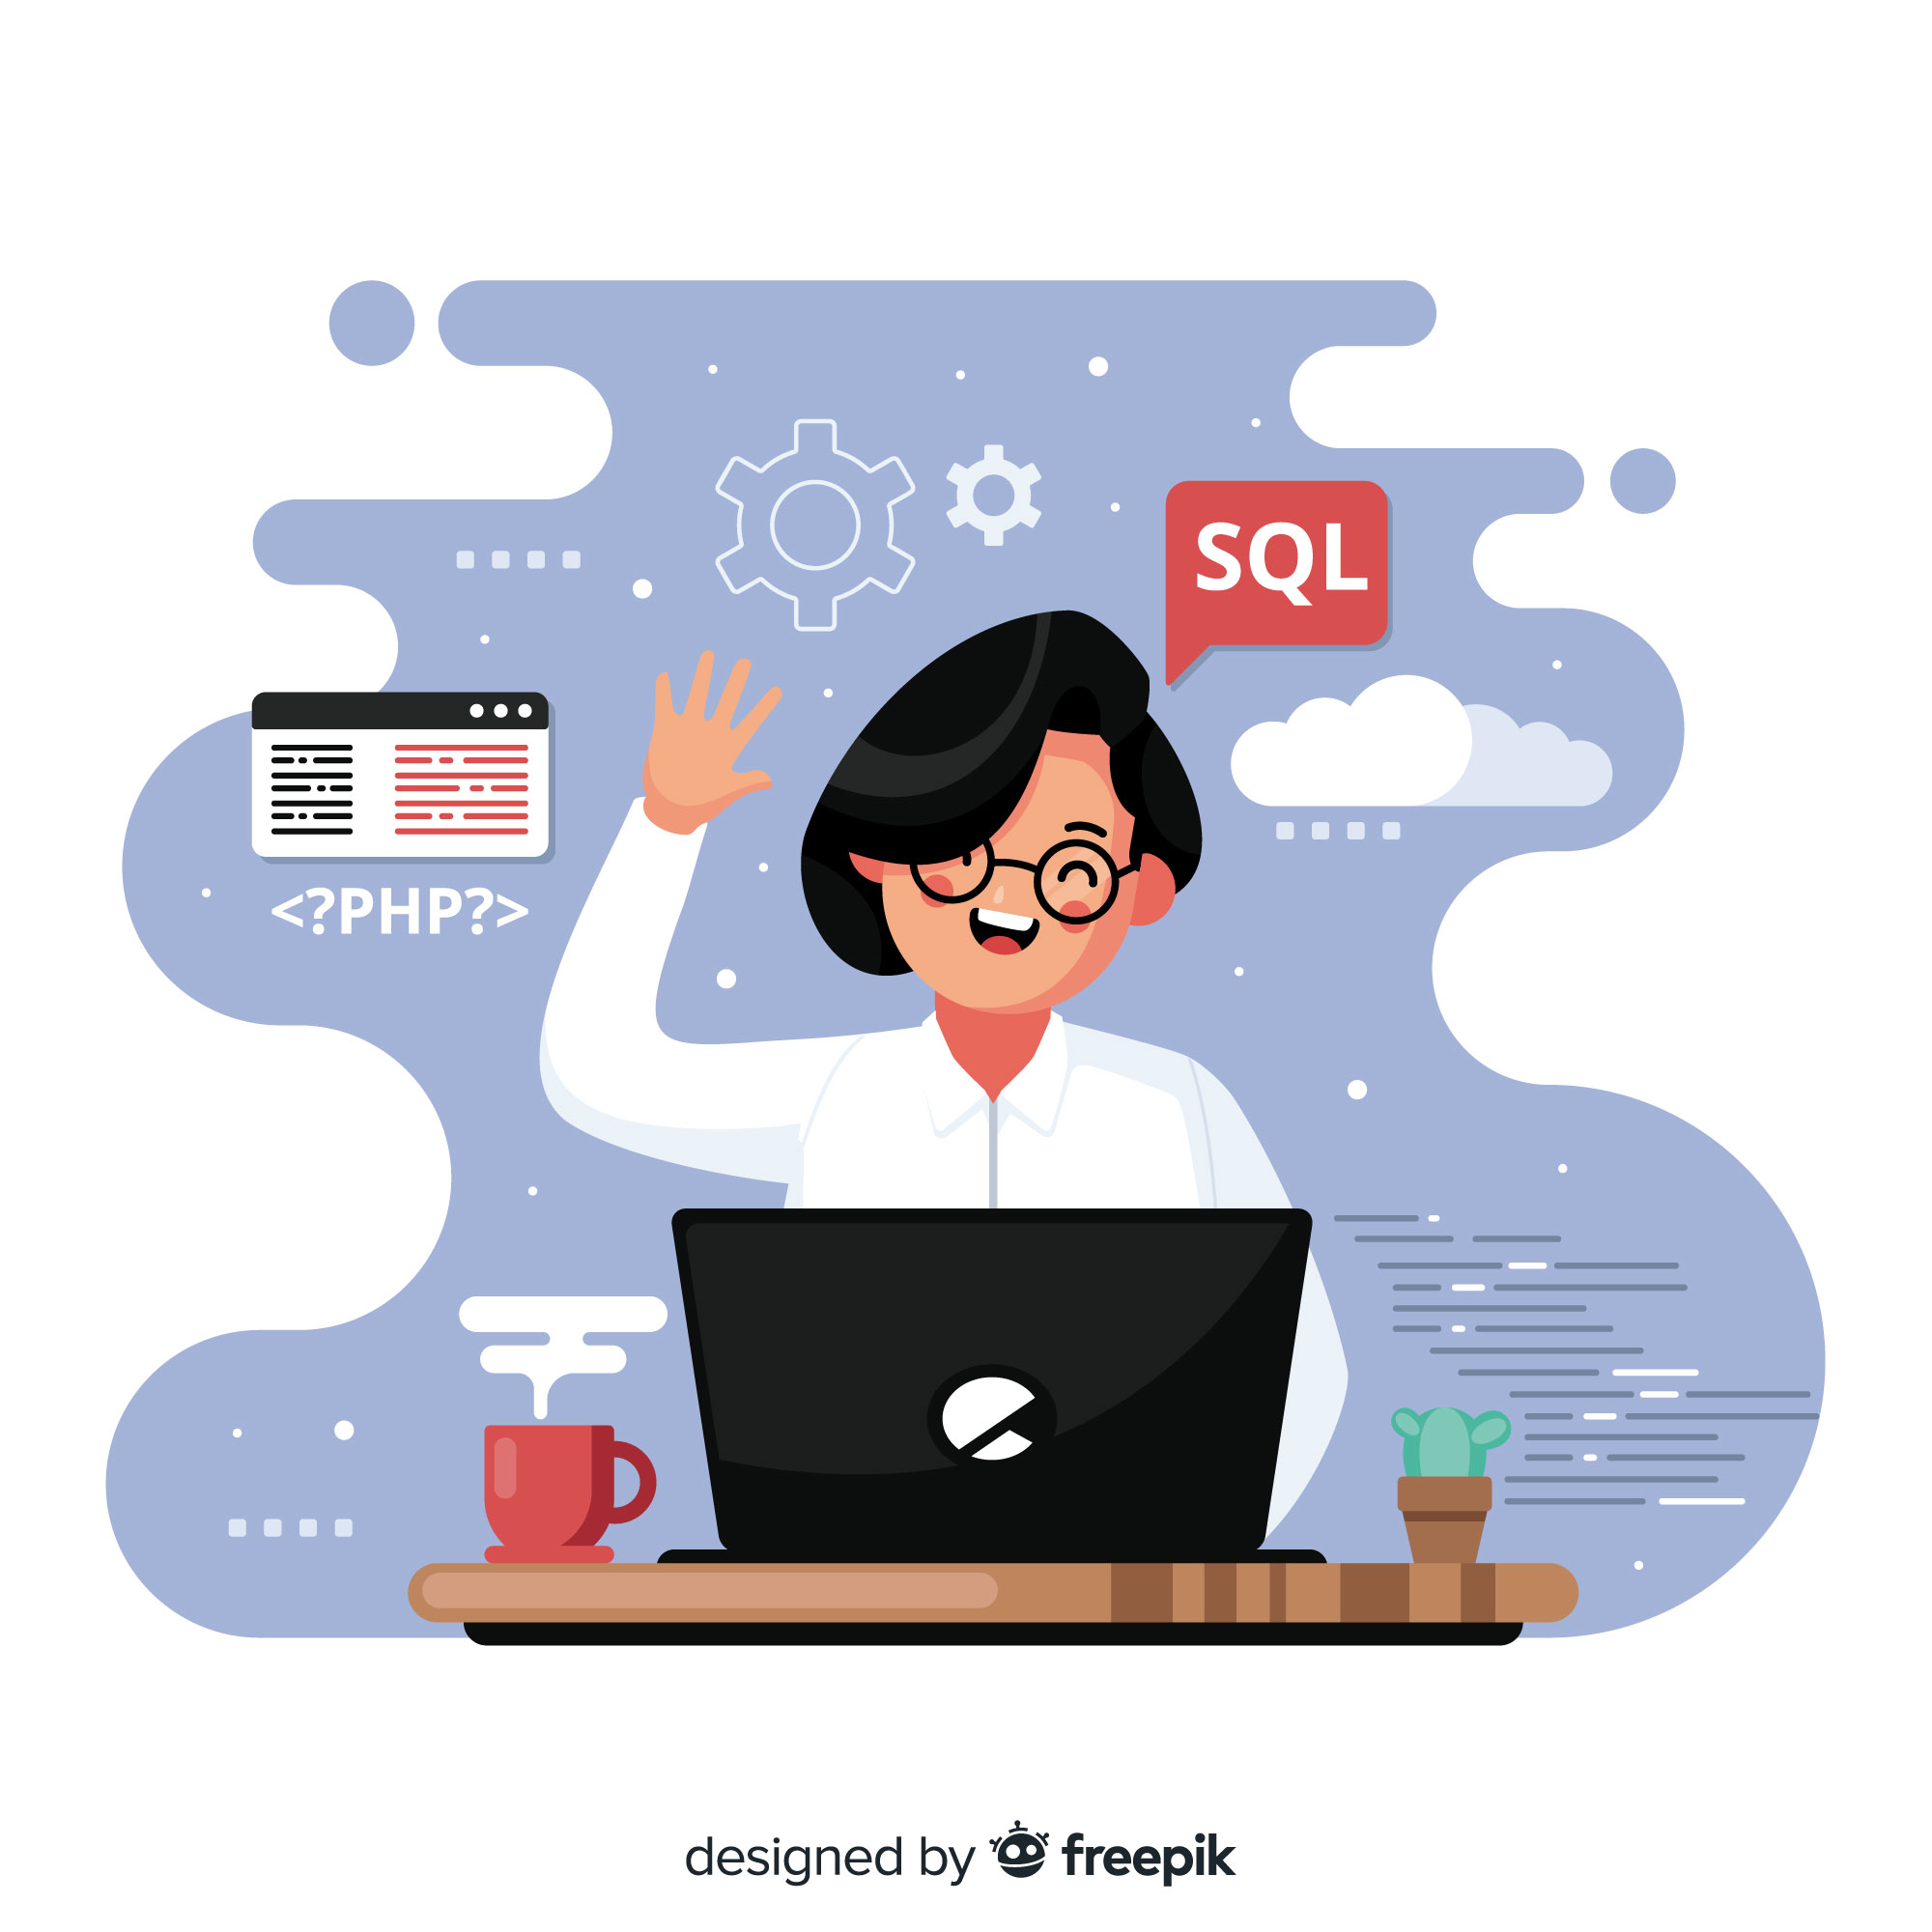 Mujer programando en SQL en un ordenador.